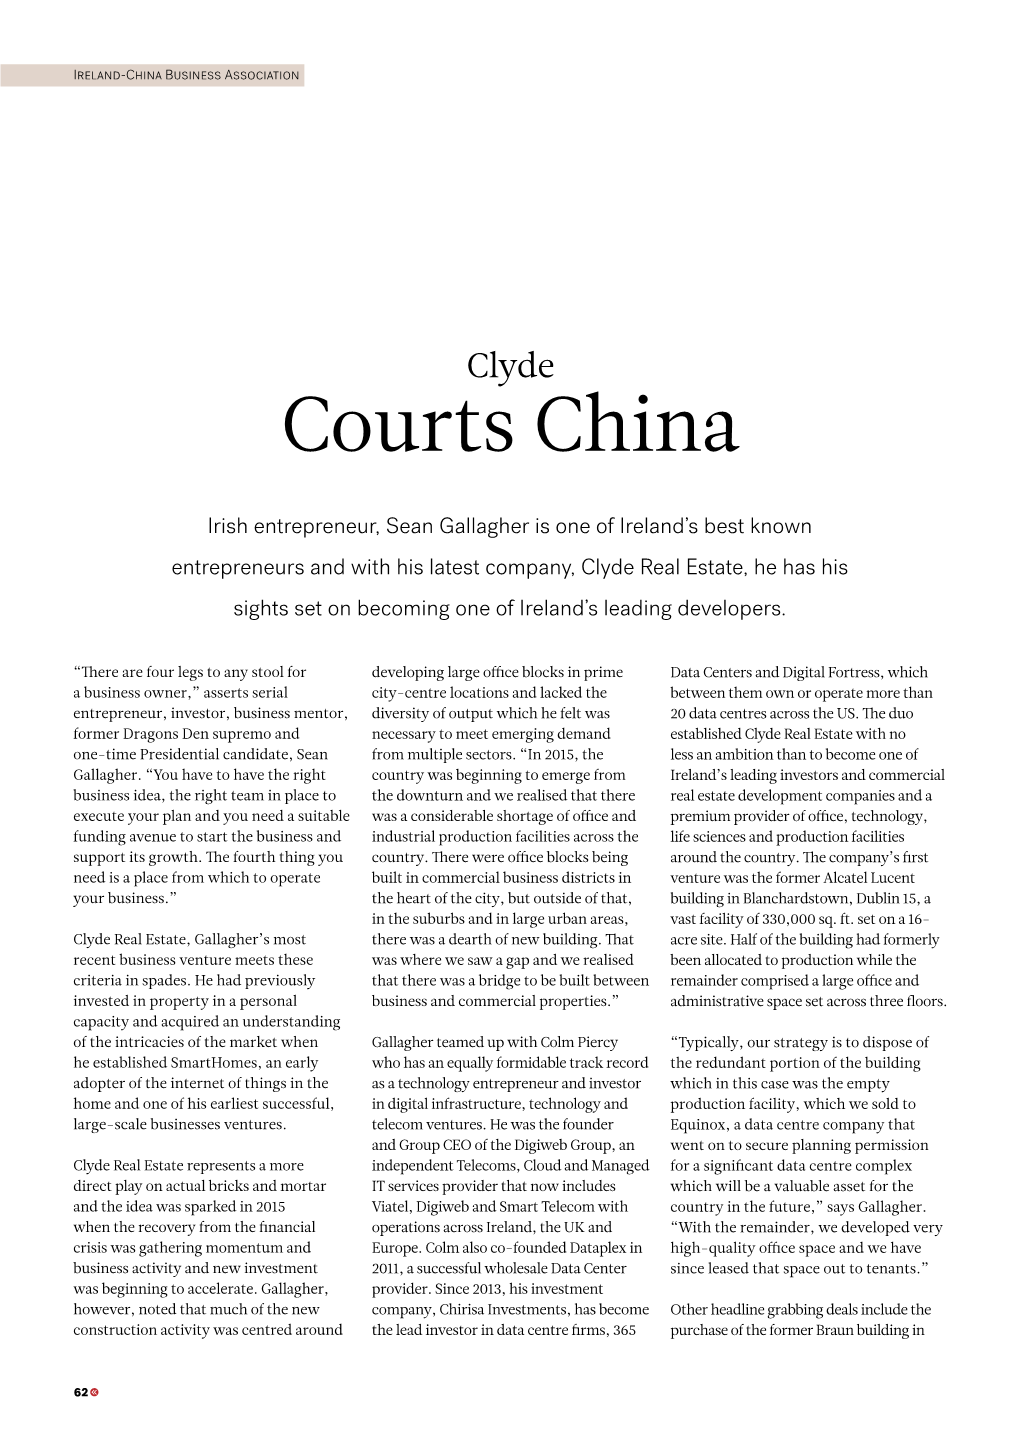 Courts China